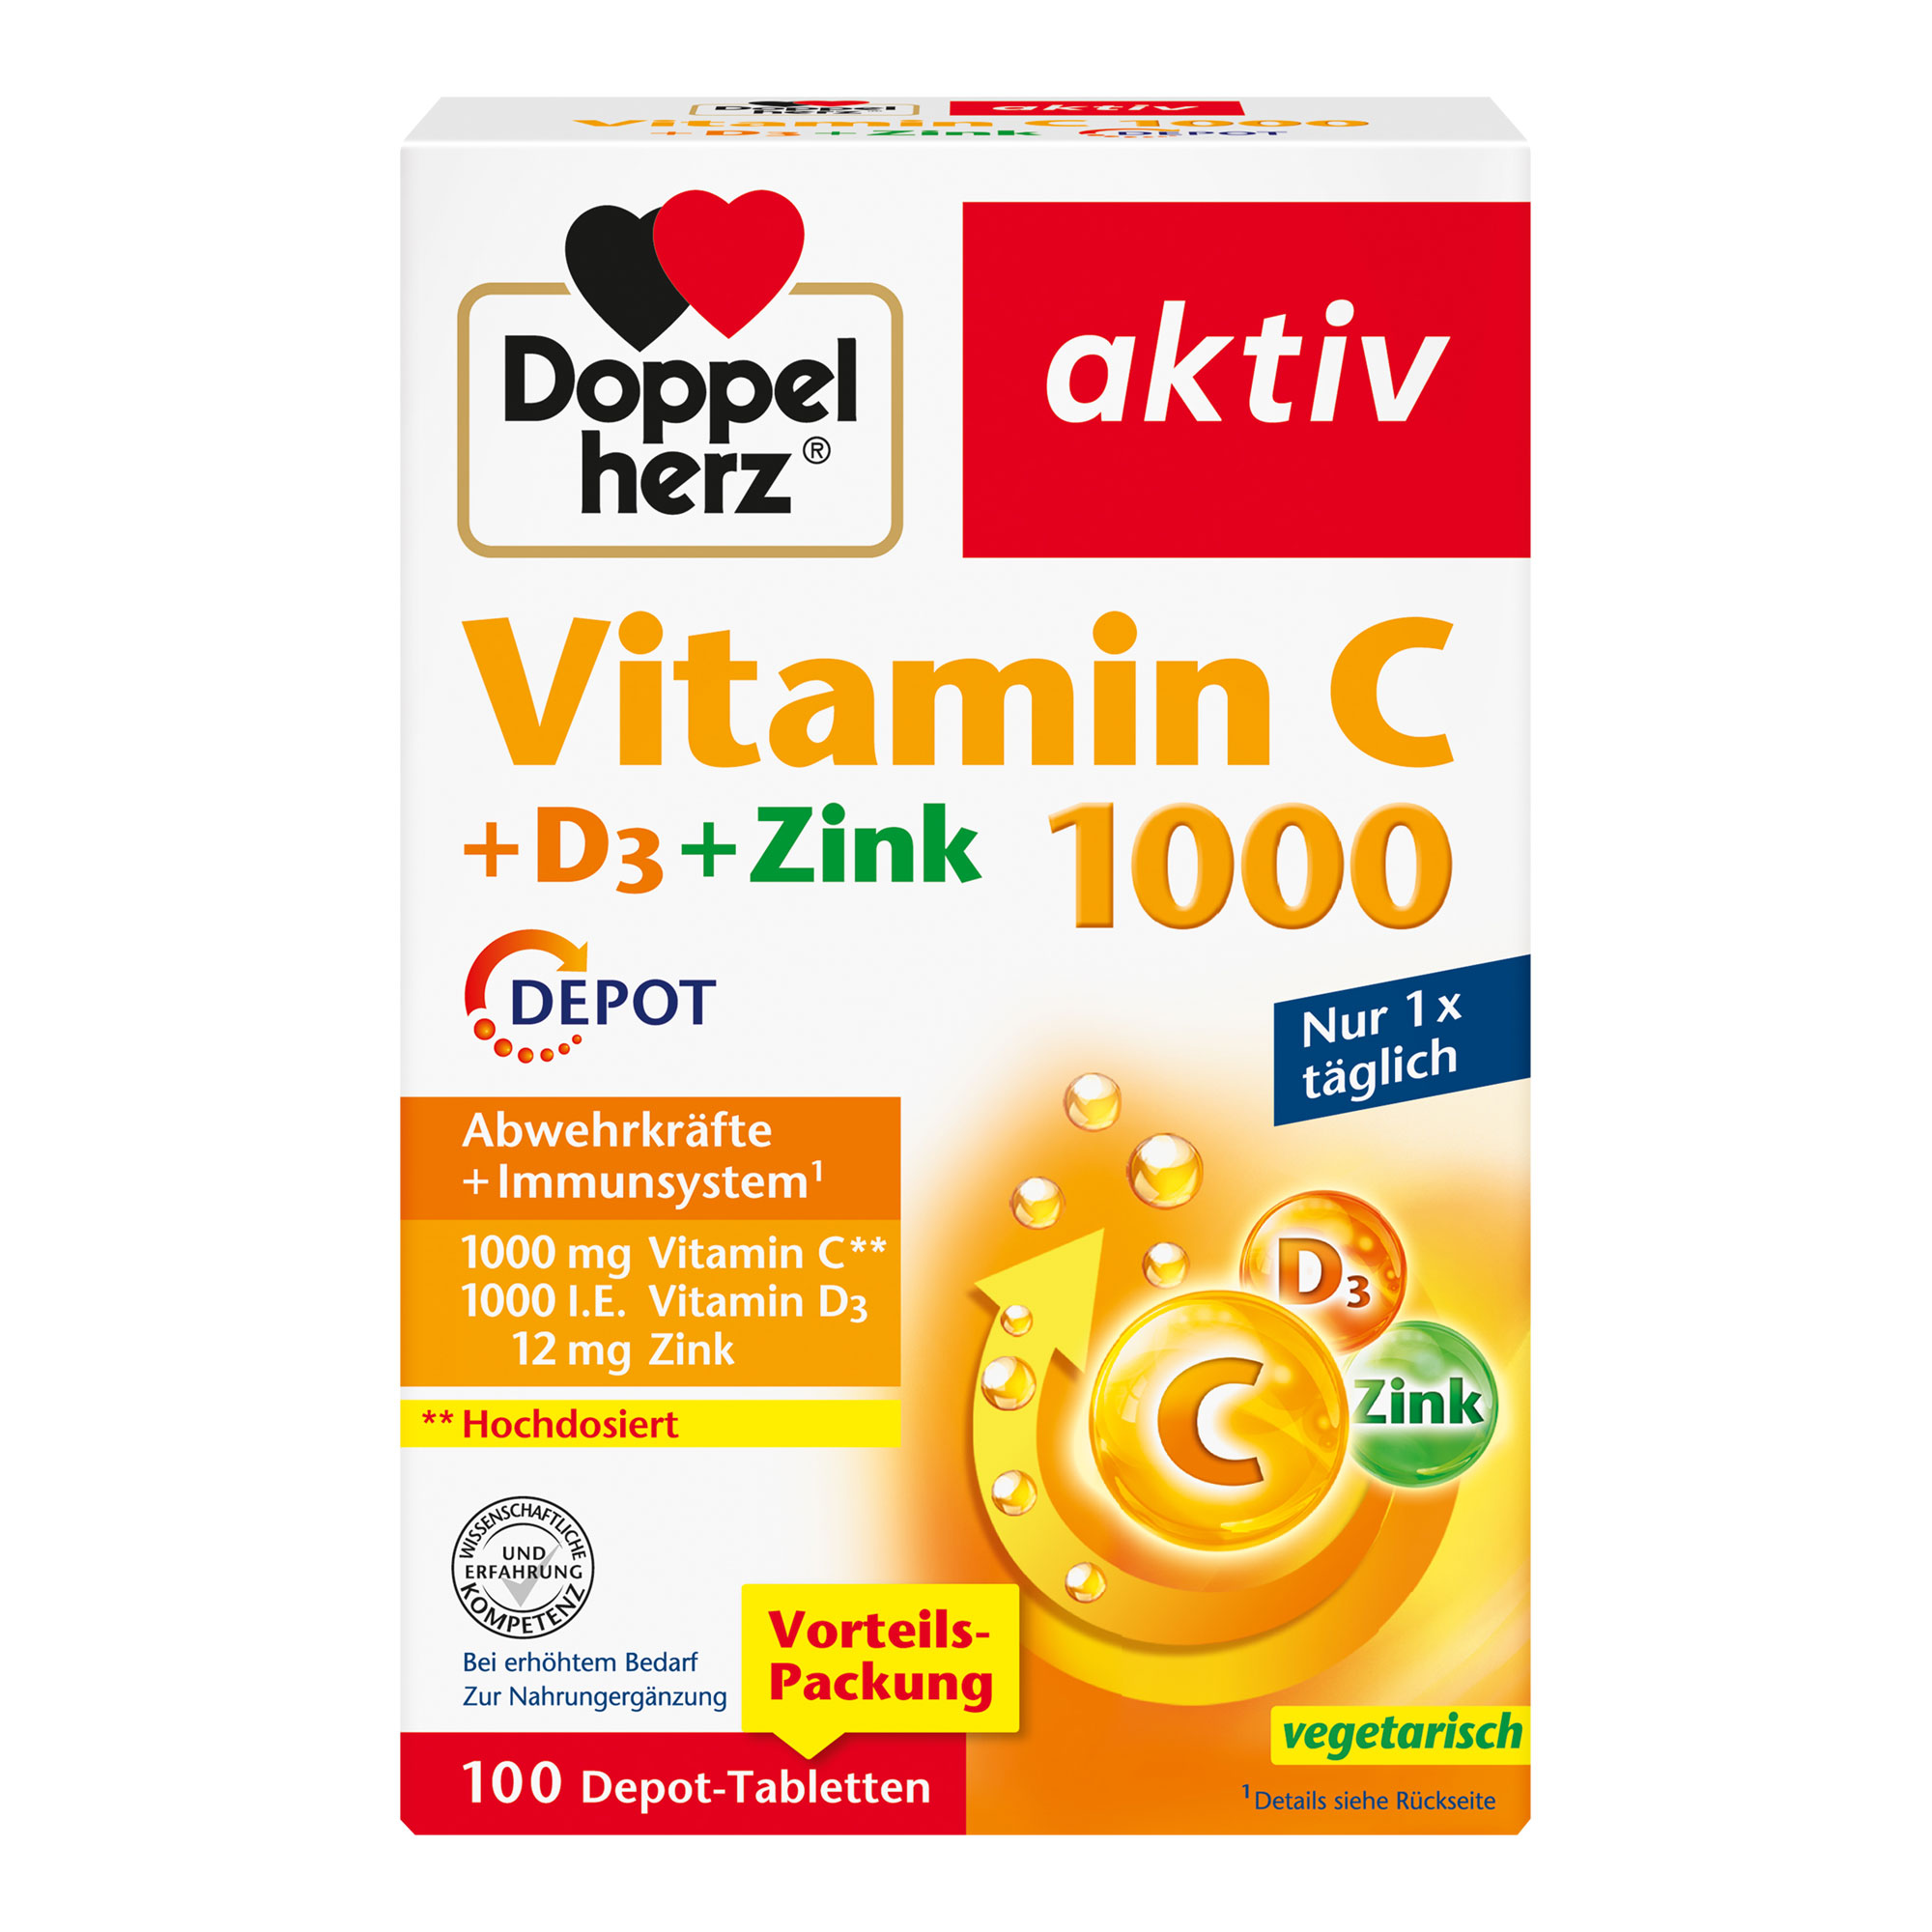 Nahrungsergänzungsmittel mit Vitamin C, D und Zink.